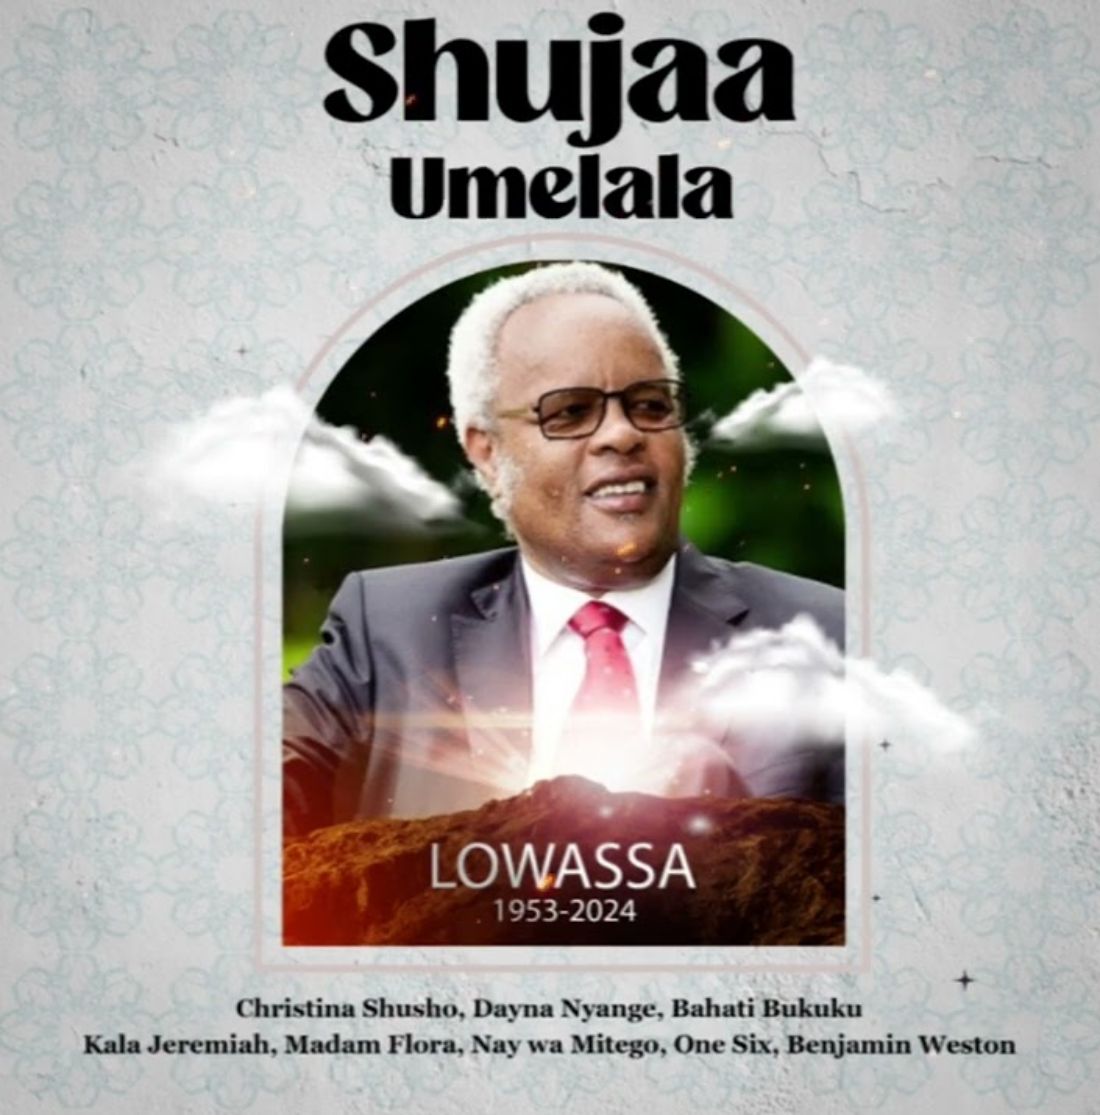 Download Audio | Wasanii marafiki wa Lowassa – Shuja umelala (Lowassa)